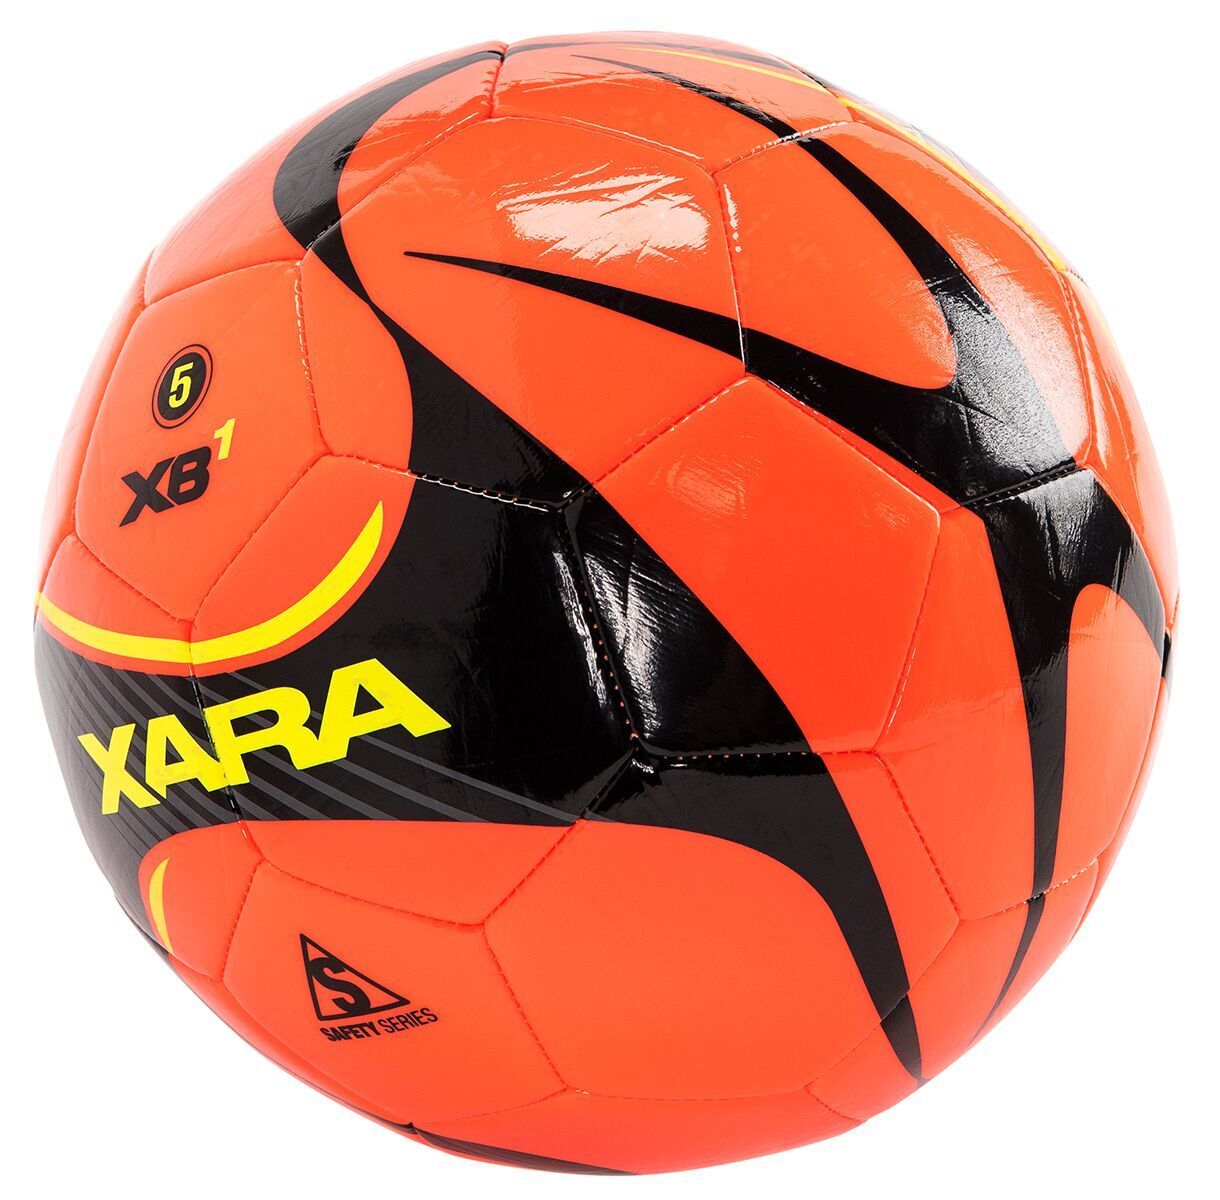 Xara XB1 V5 Soccer Ball | 8051 Soccer Ball Xara 